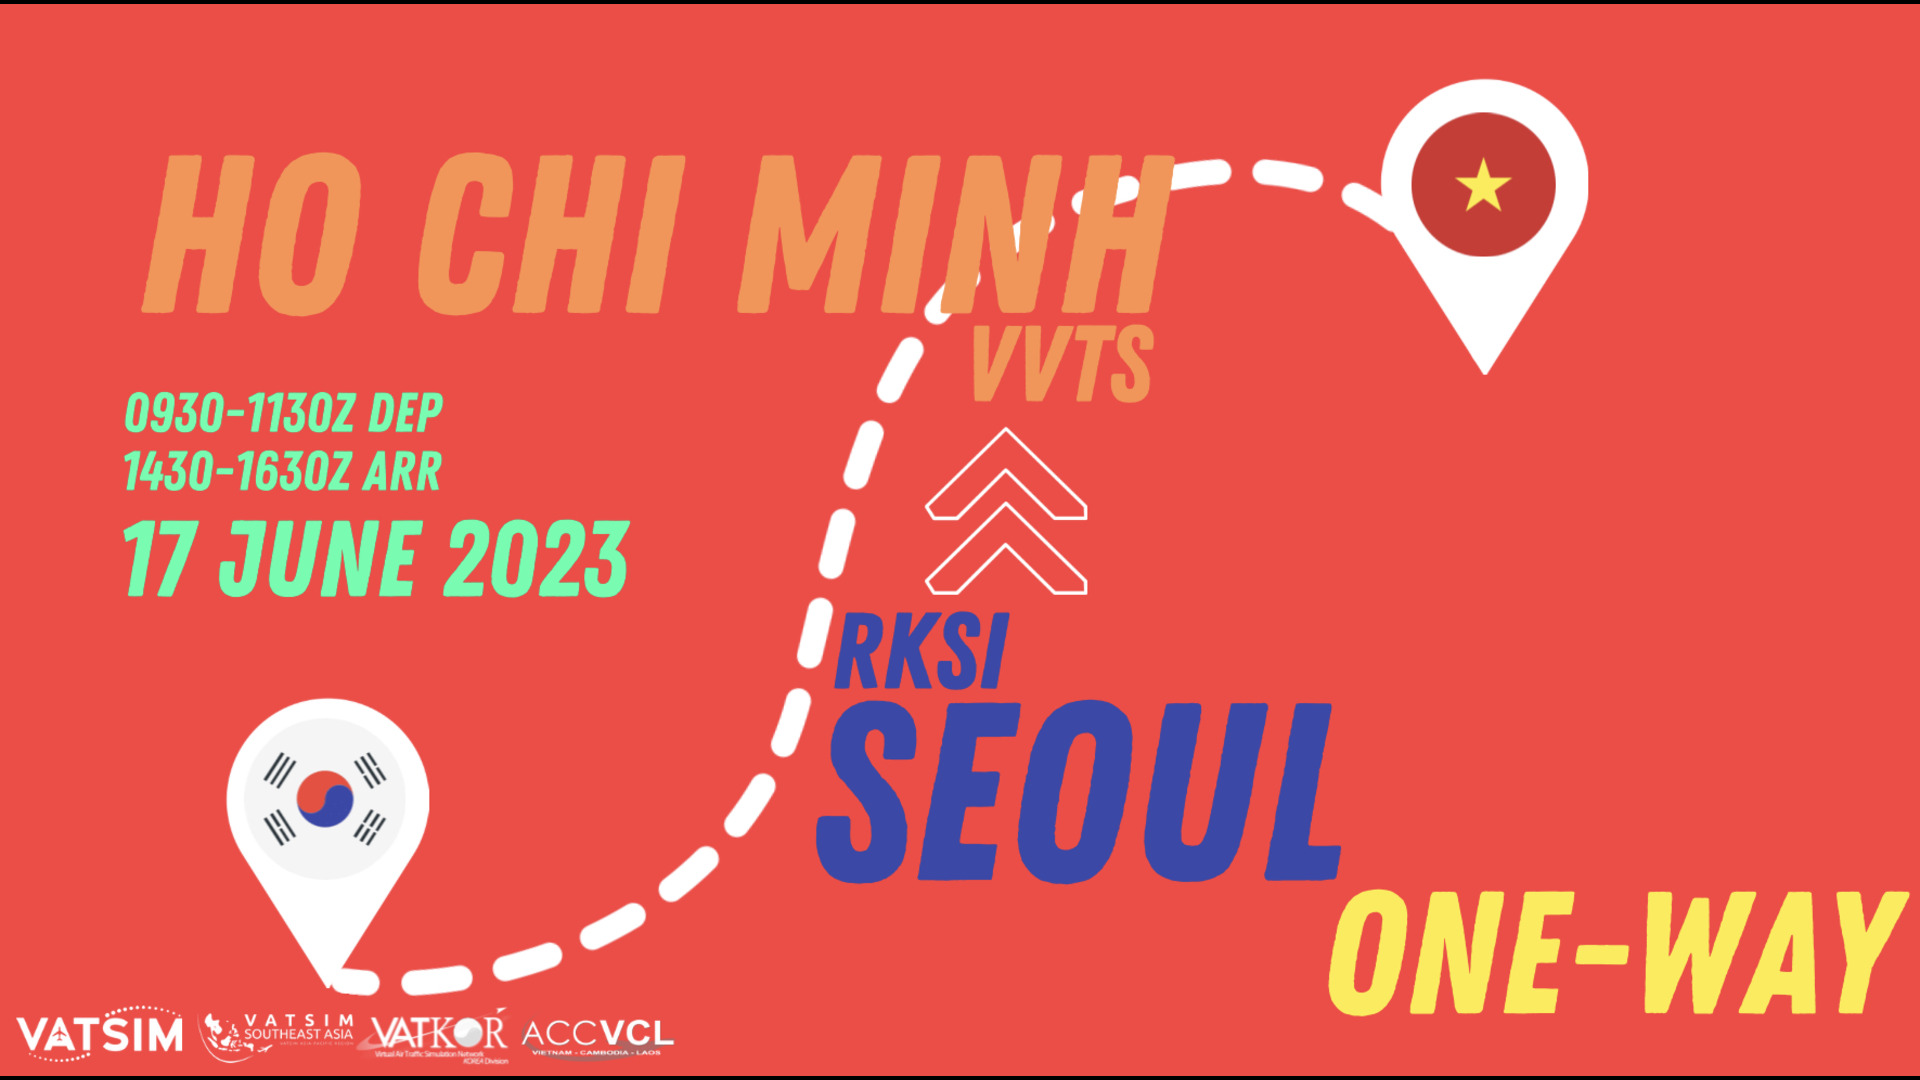 Seoul to Ho Chi Minh One-way